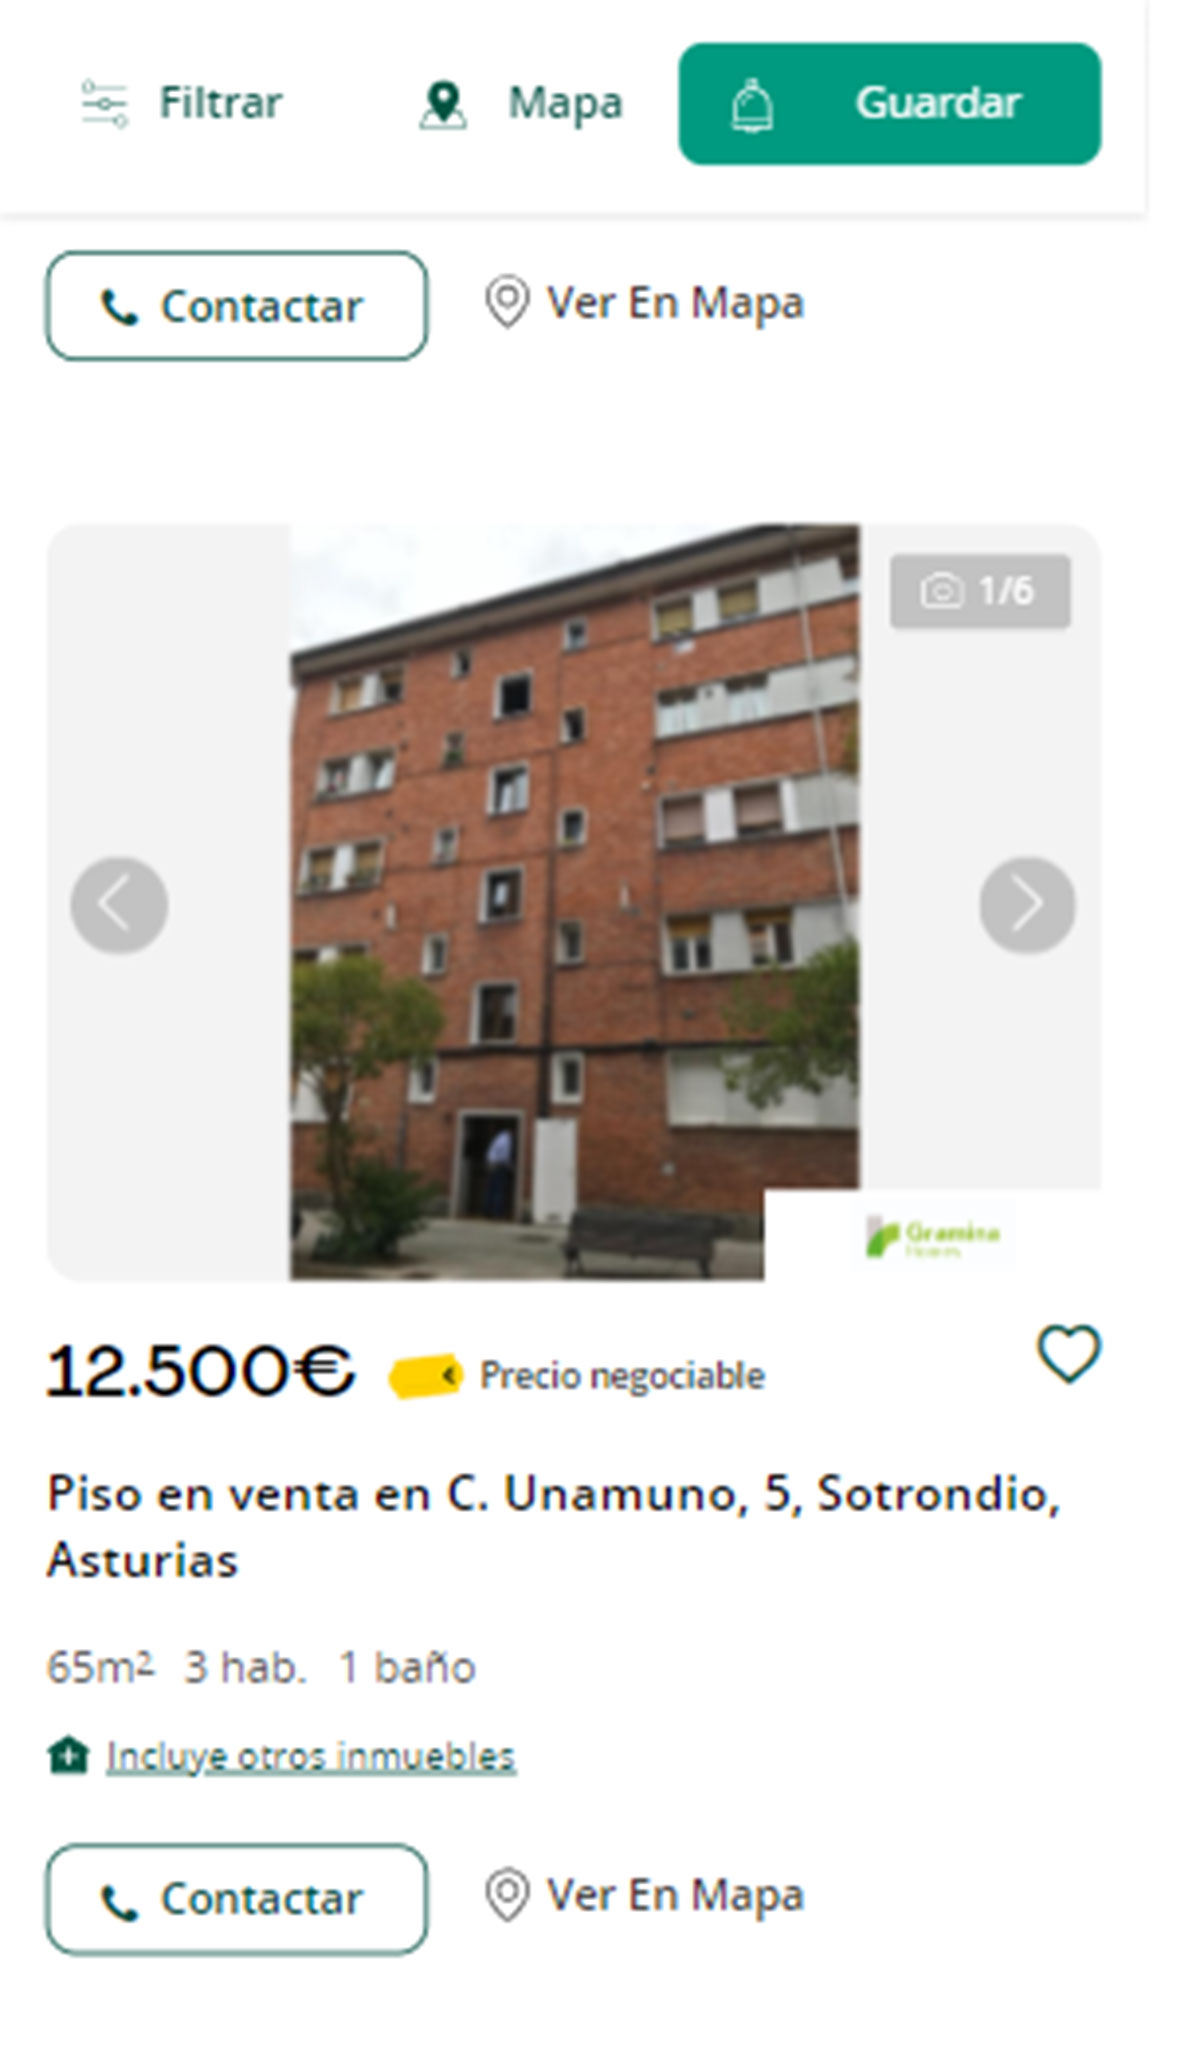 Piso en Asturias por 12.500 euros